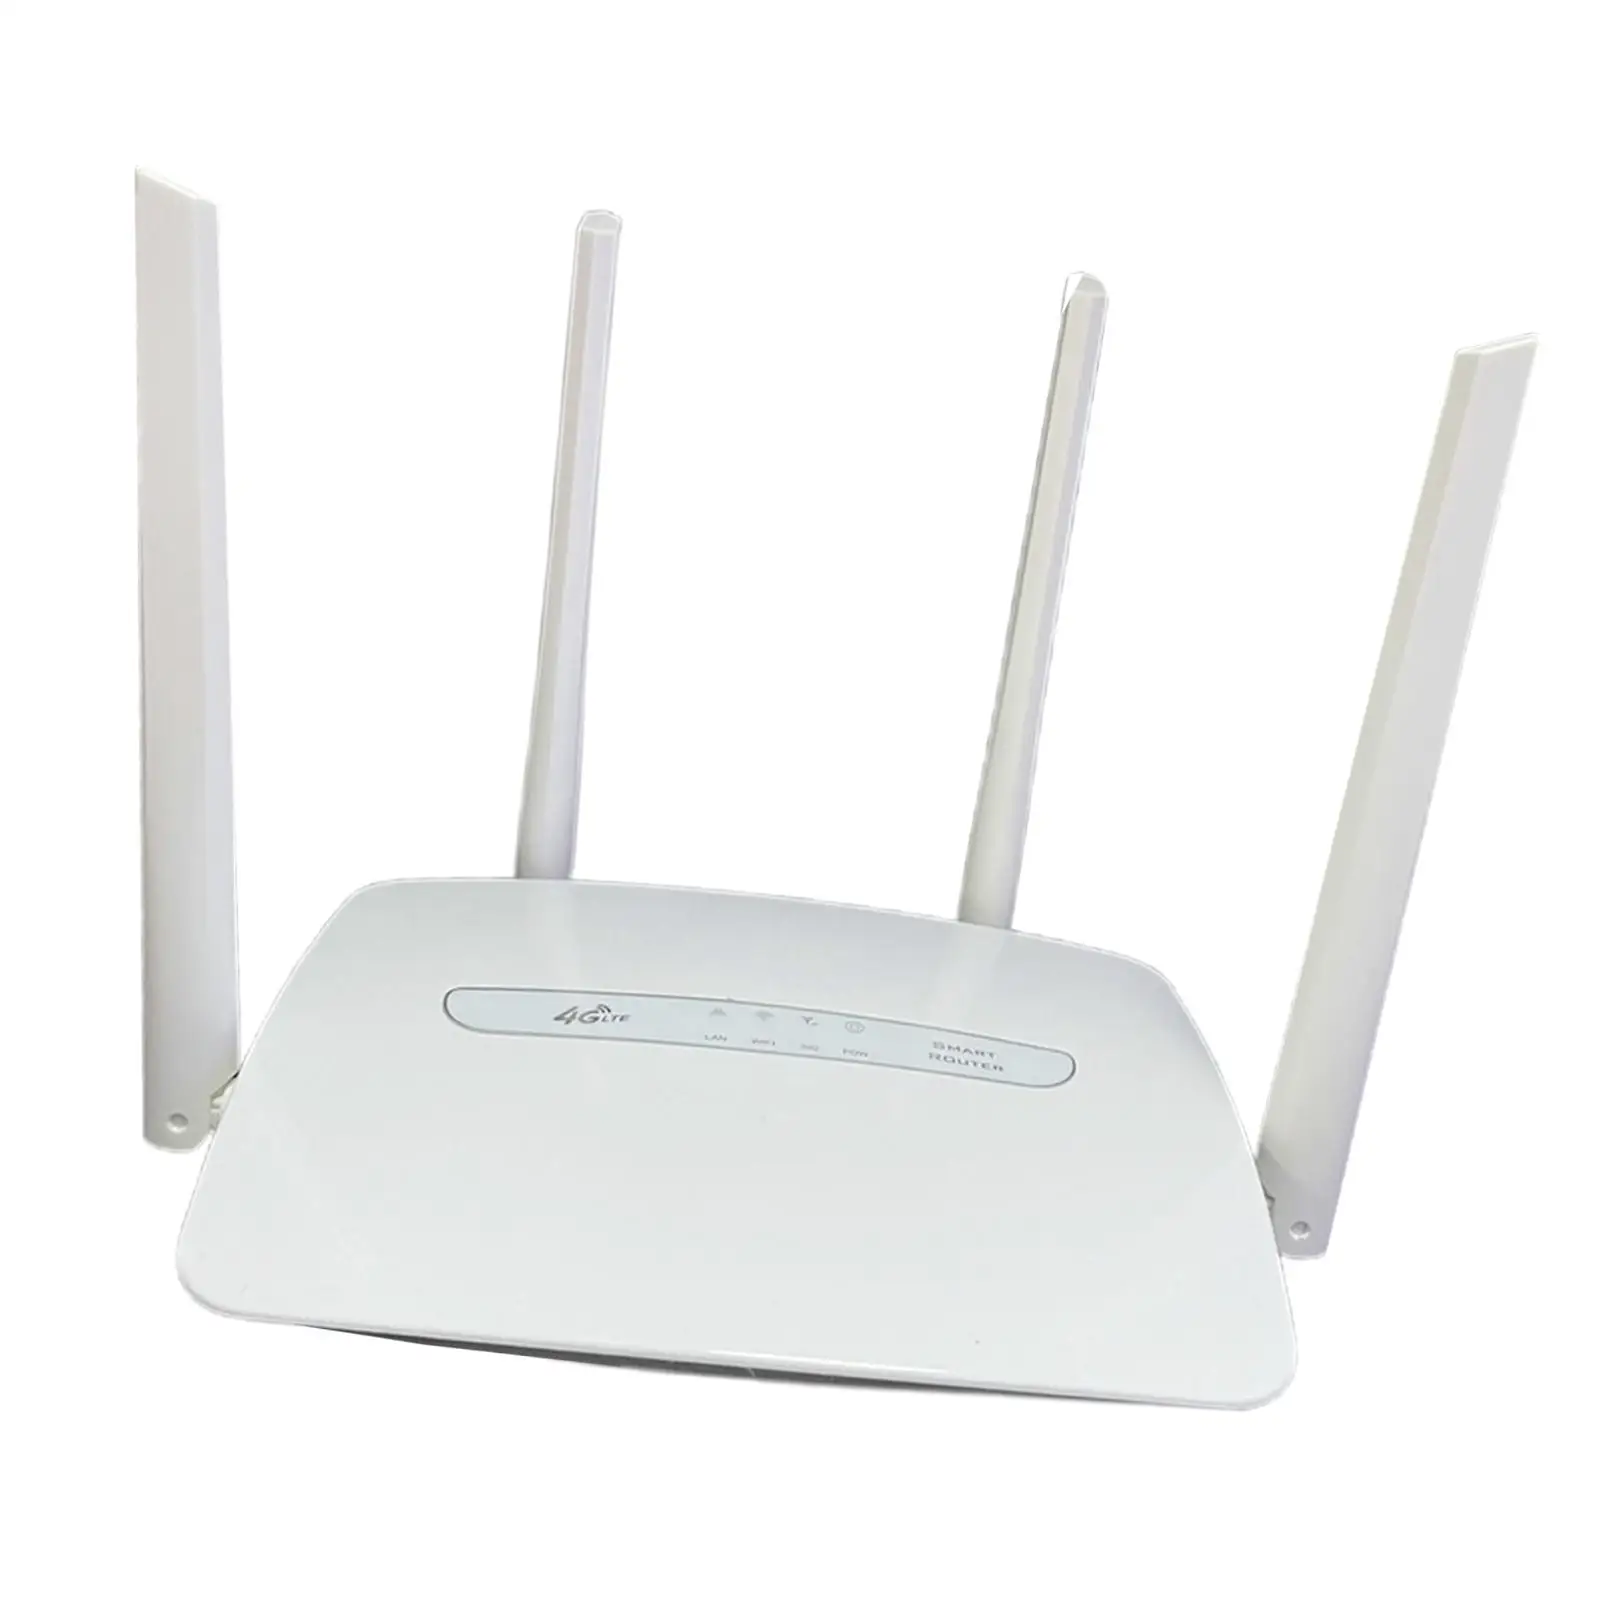 4G LTE WiFi Wireless Router 4 Hotspoturi Mobile pentru acasă3